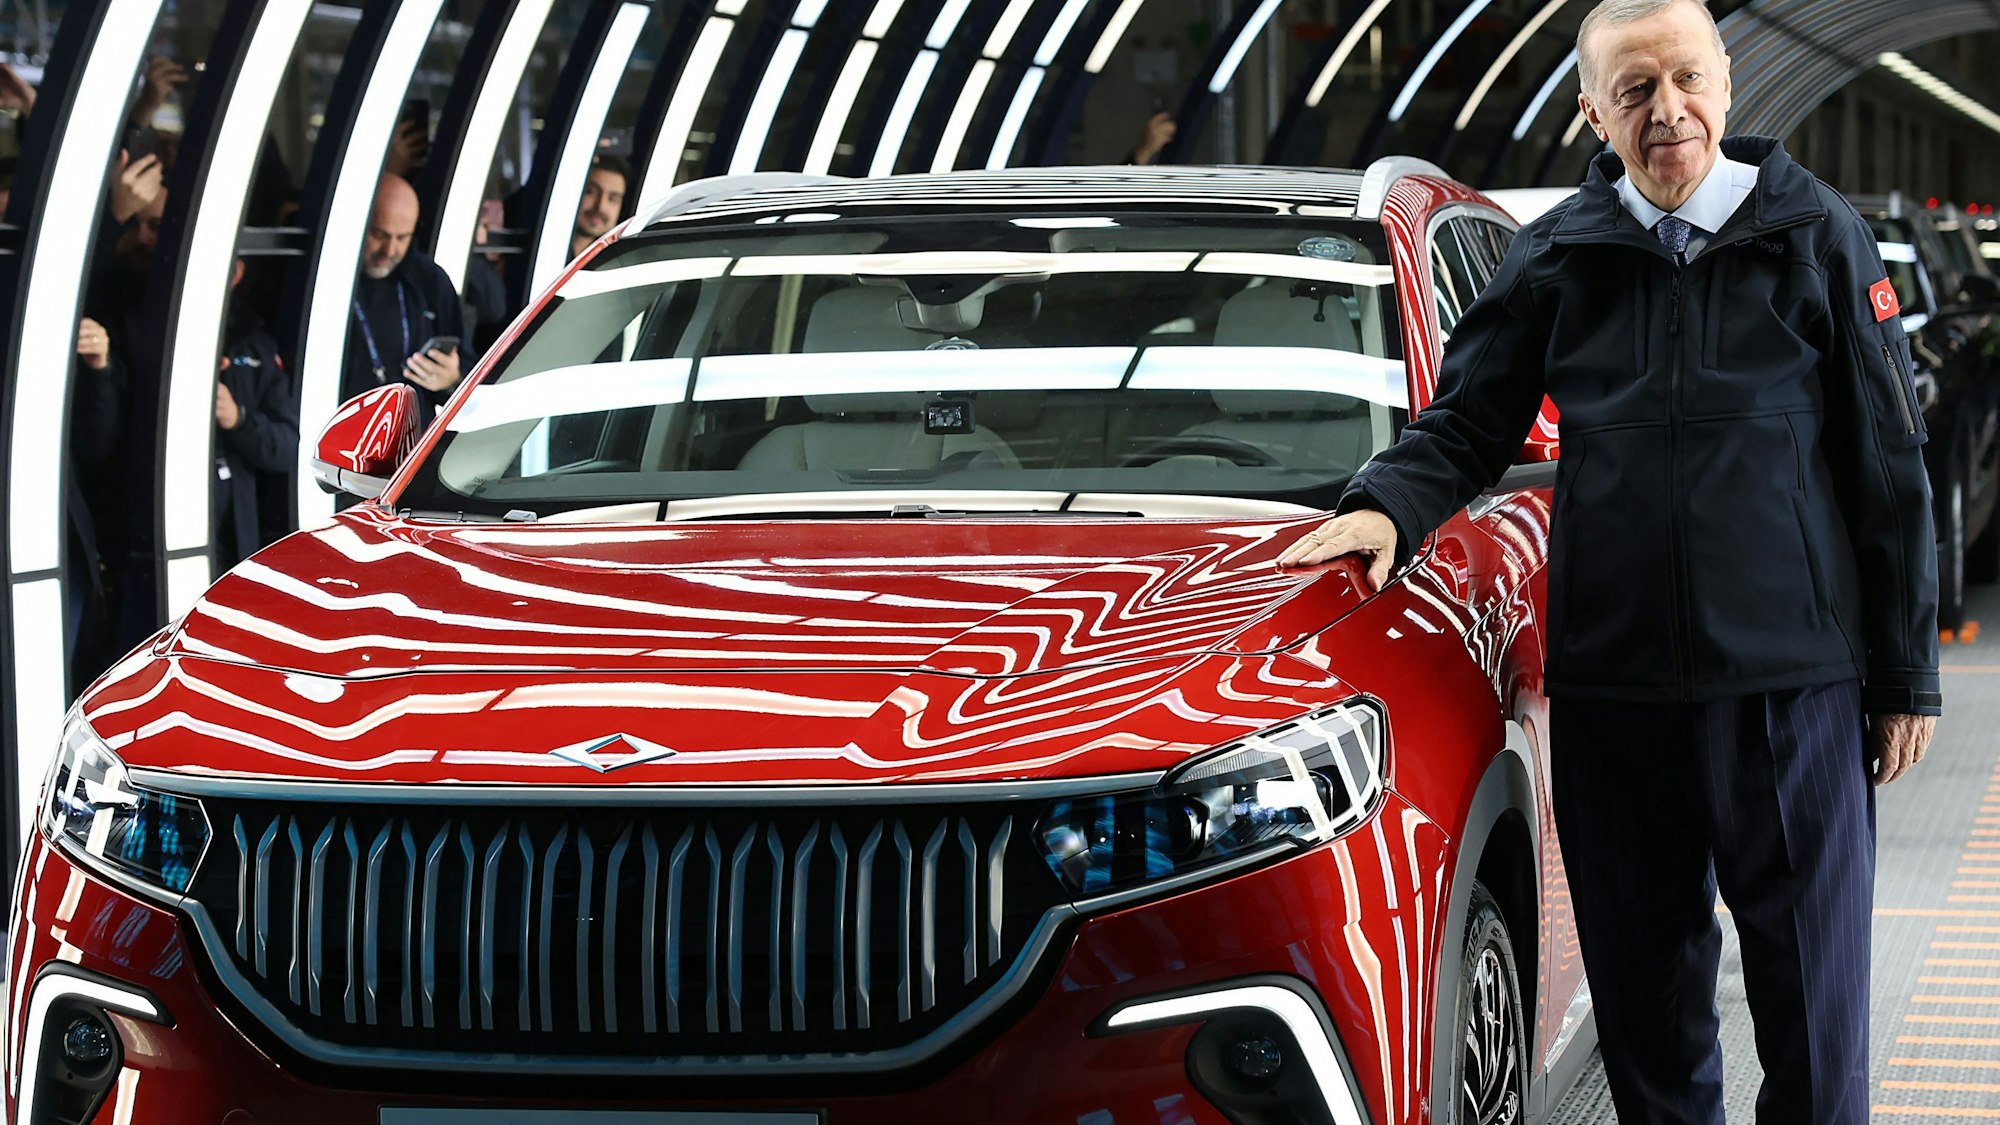 Der türkische Präsident Recep Tayyip Erdogan posiert mit einem roten Auto.